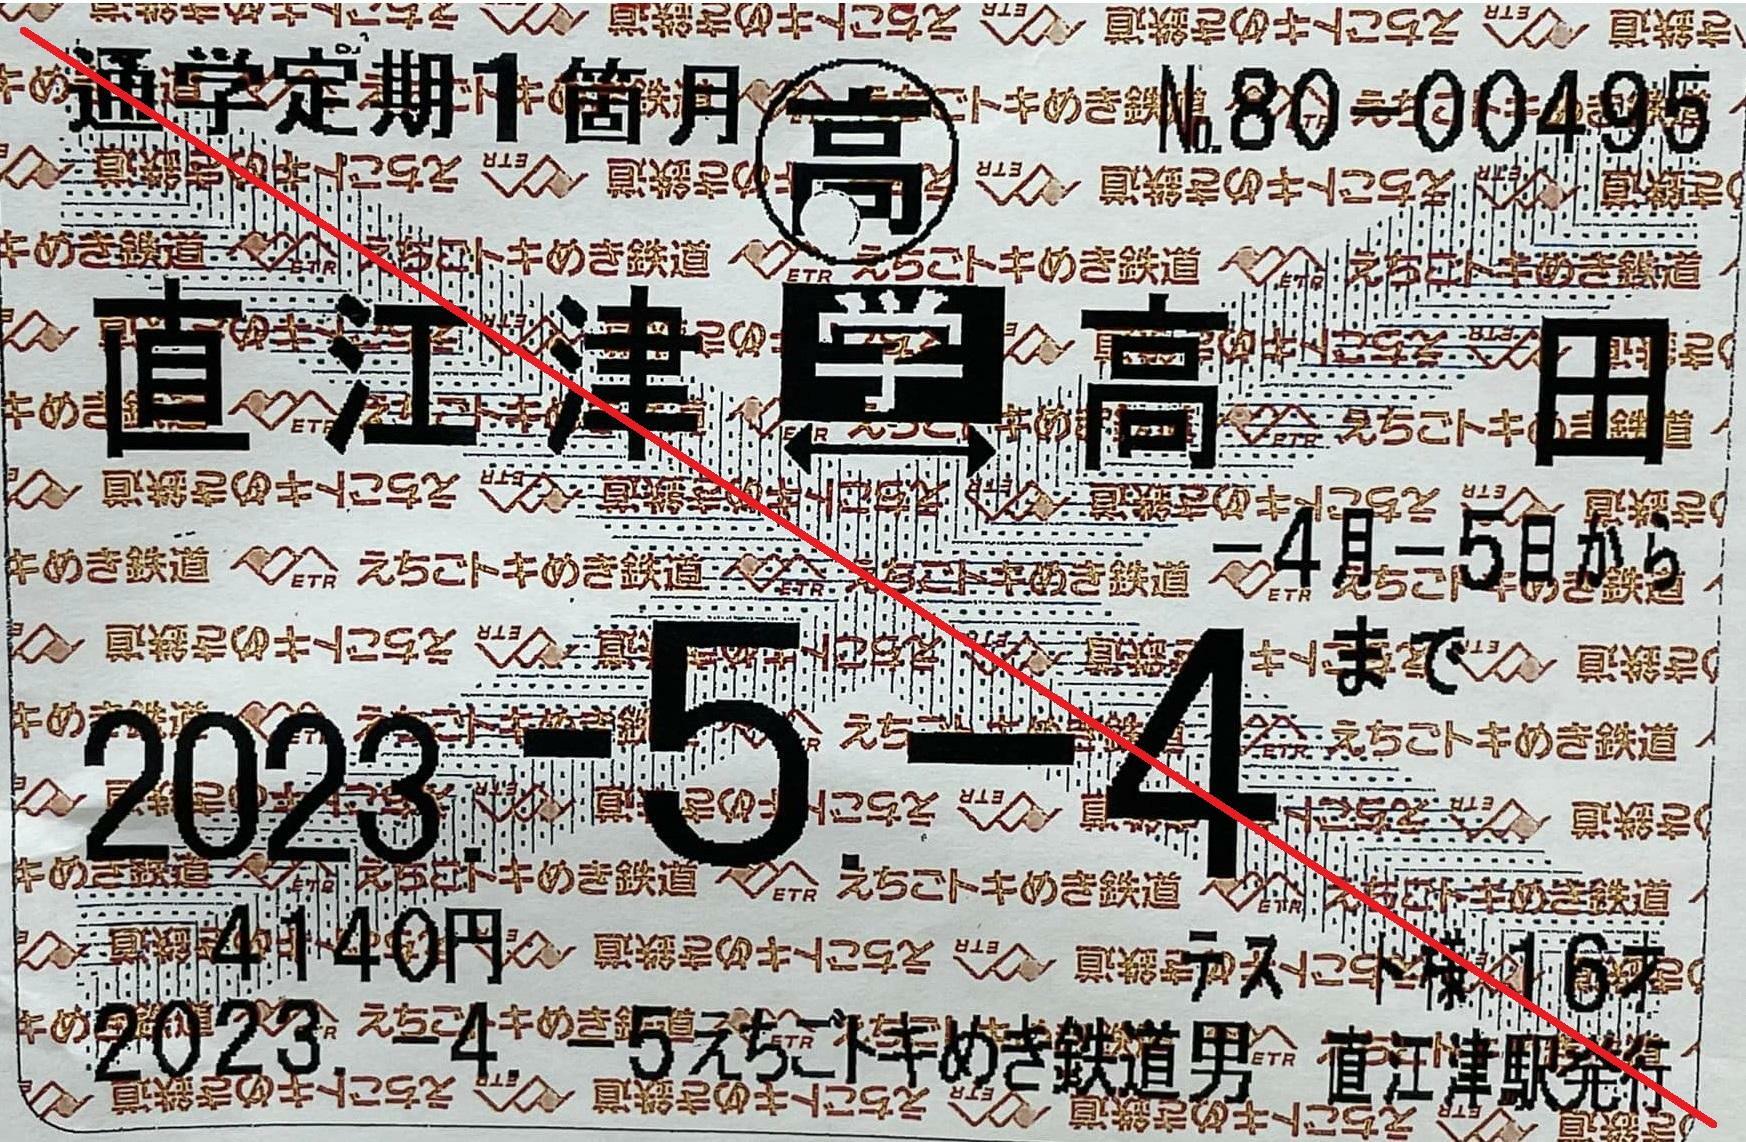 えちごトキめき鉄道の定期券見本